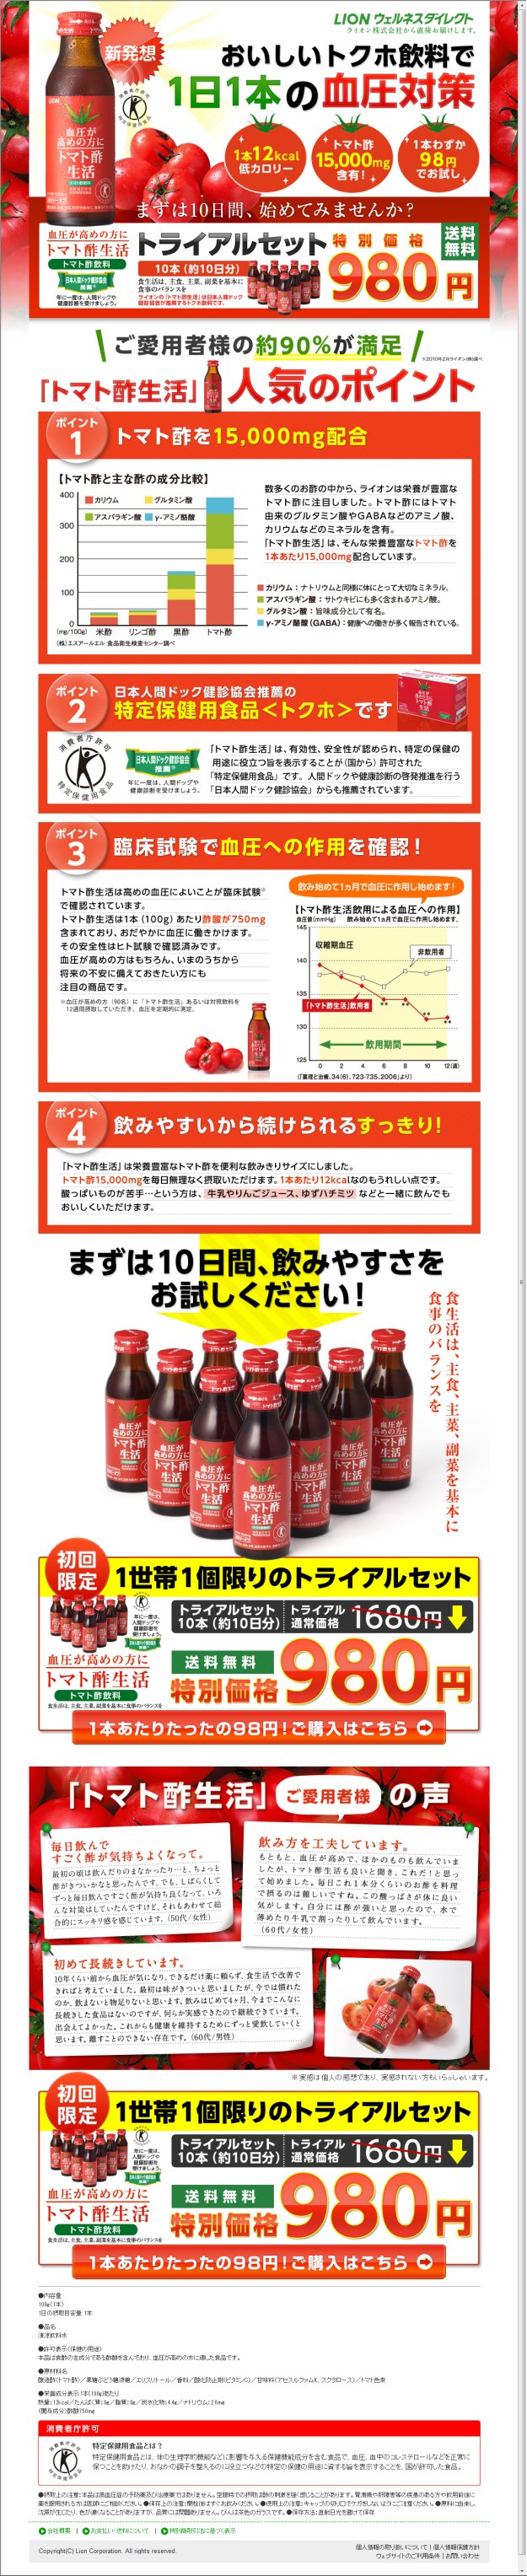 ランディングページ バナー広告大百科 単品通販 新発想おいしいトクホ飲料で1日1本の血圧対策 トマト酢生活